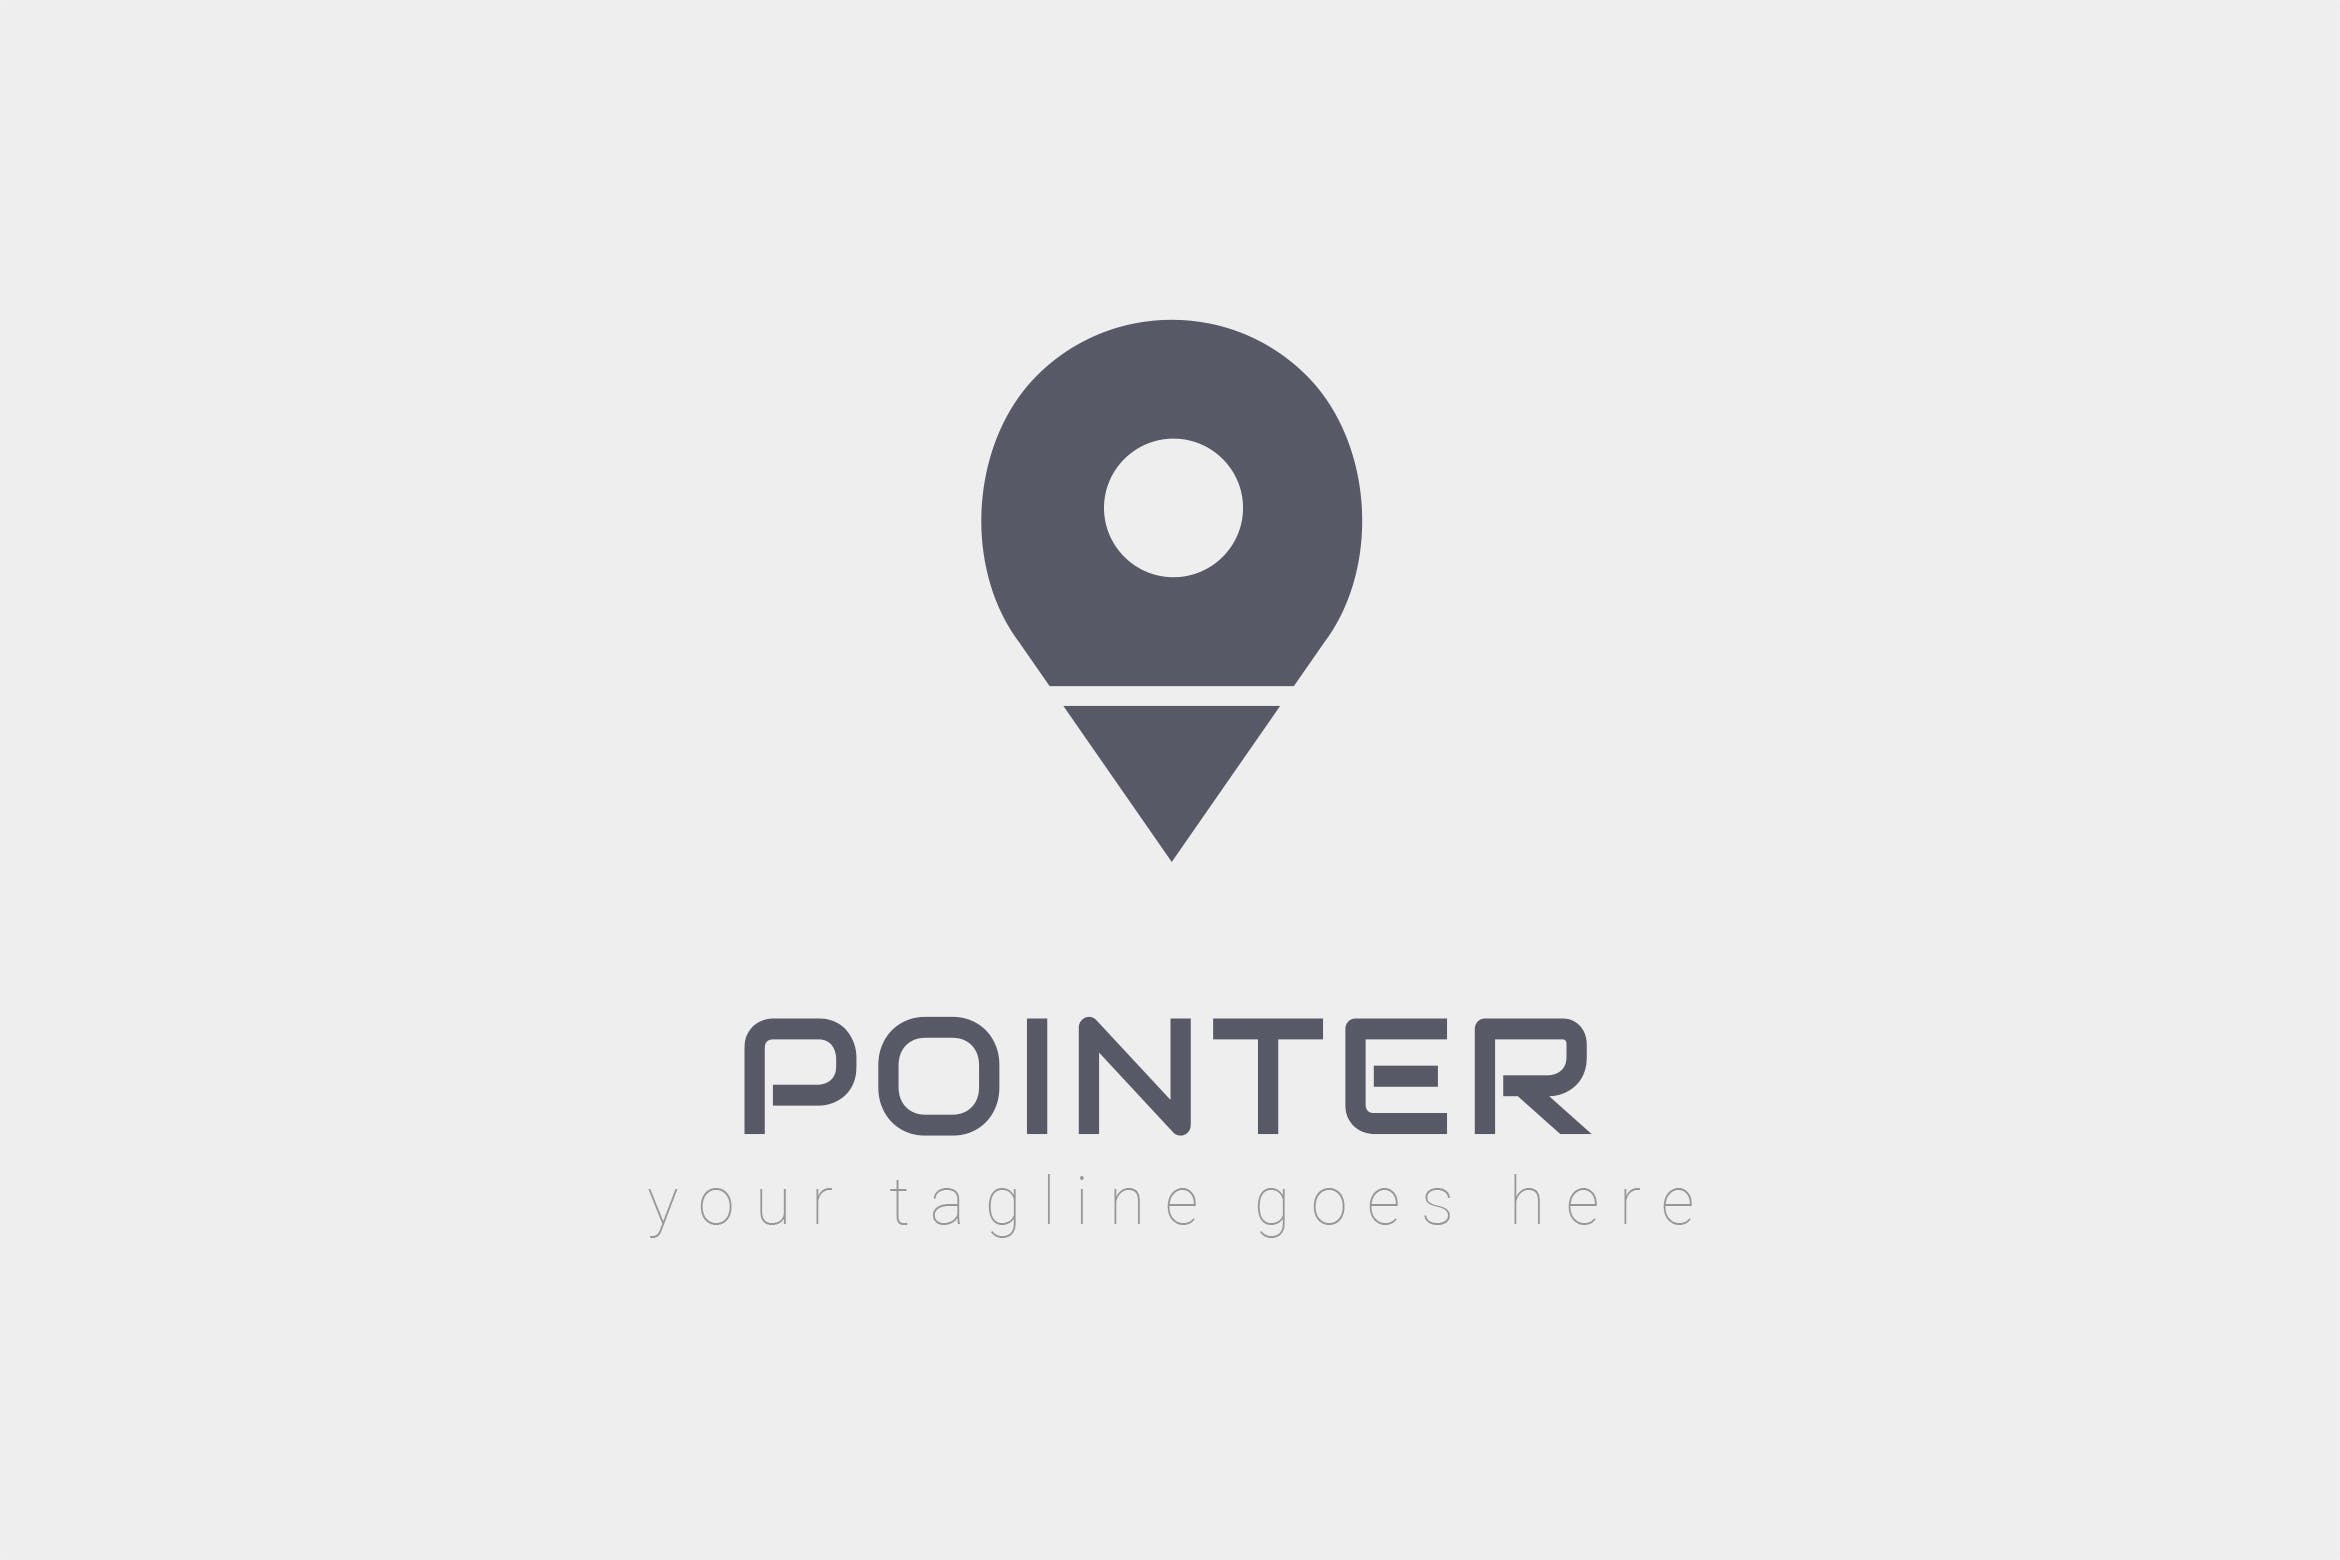 旅游/地图品牌Logo设计第一素材精选模板 Pointer – Logo Design插图